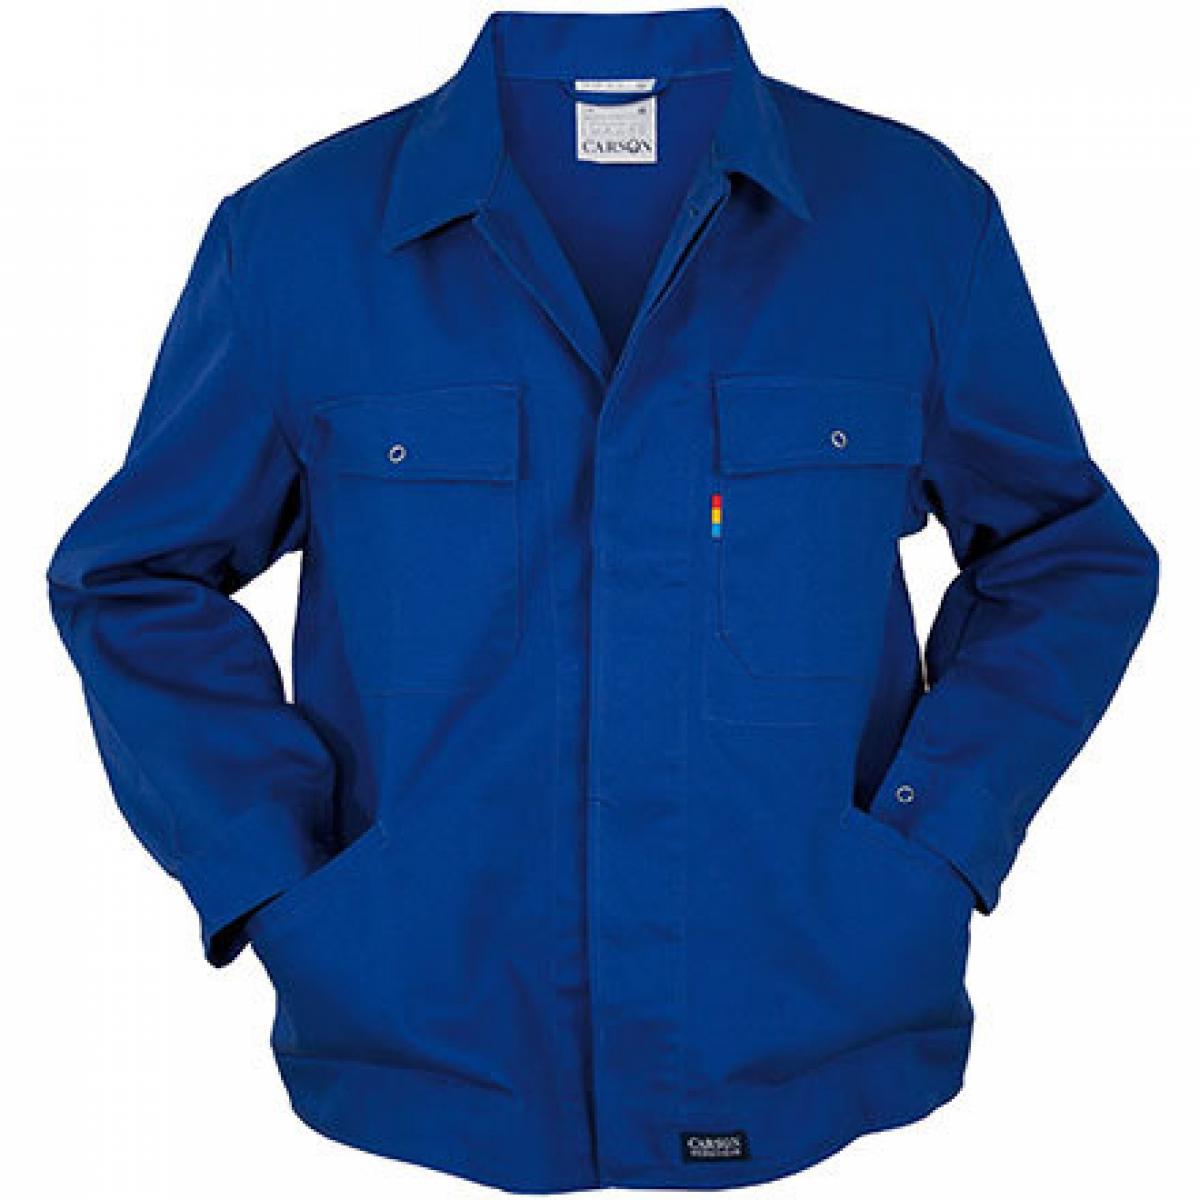 Hersteller: Carson Classic Workwear Herstellernummer: KTH728 Artikelbezeichnung: Herren Classic Blouson Work Jacket bis 60 Grad waschbar Farbe: Royal